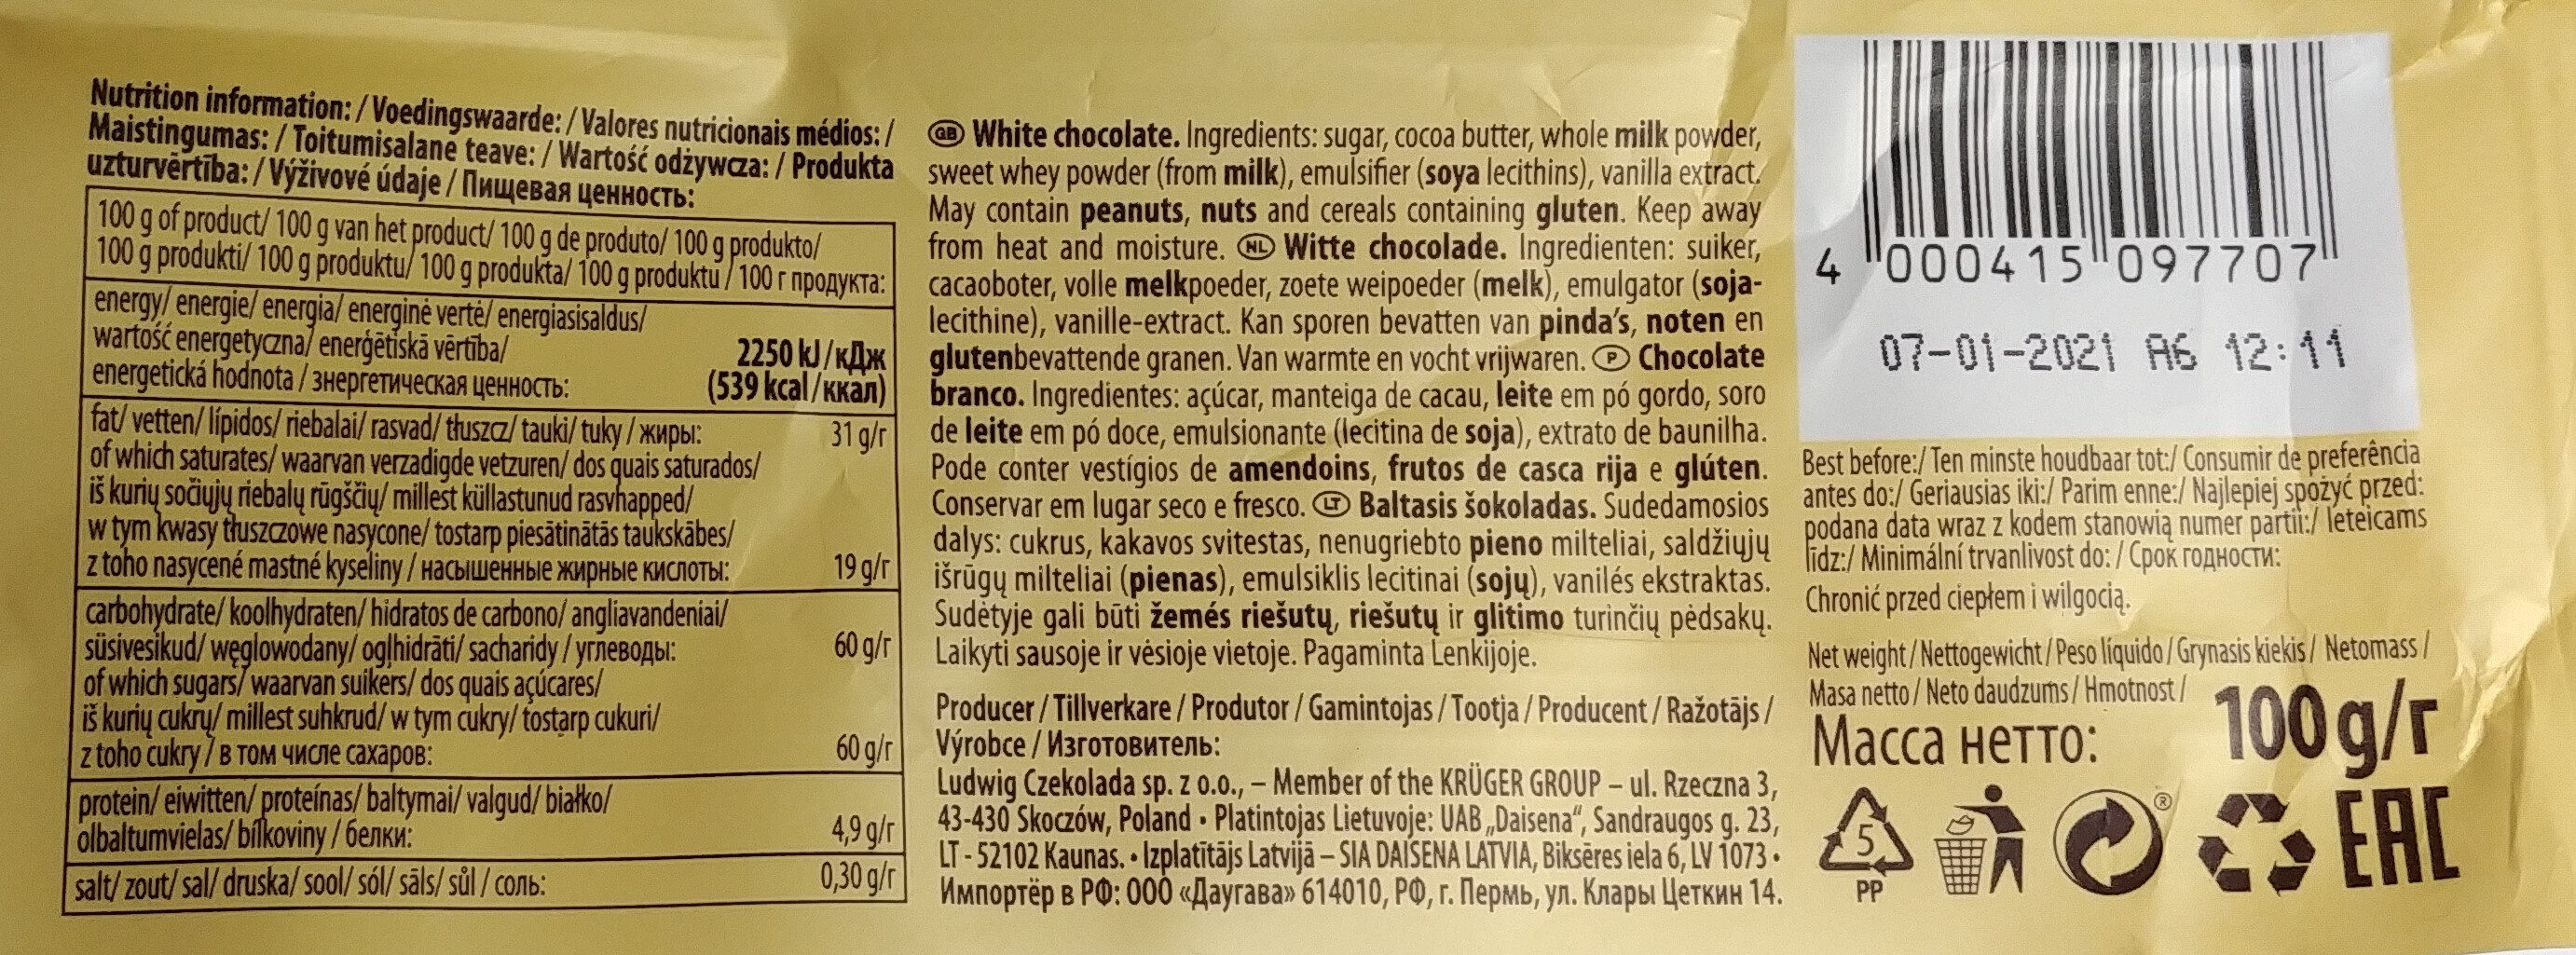 Biała czekolada - Dados nutricionais - pl